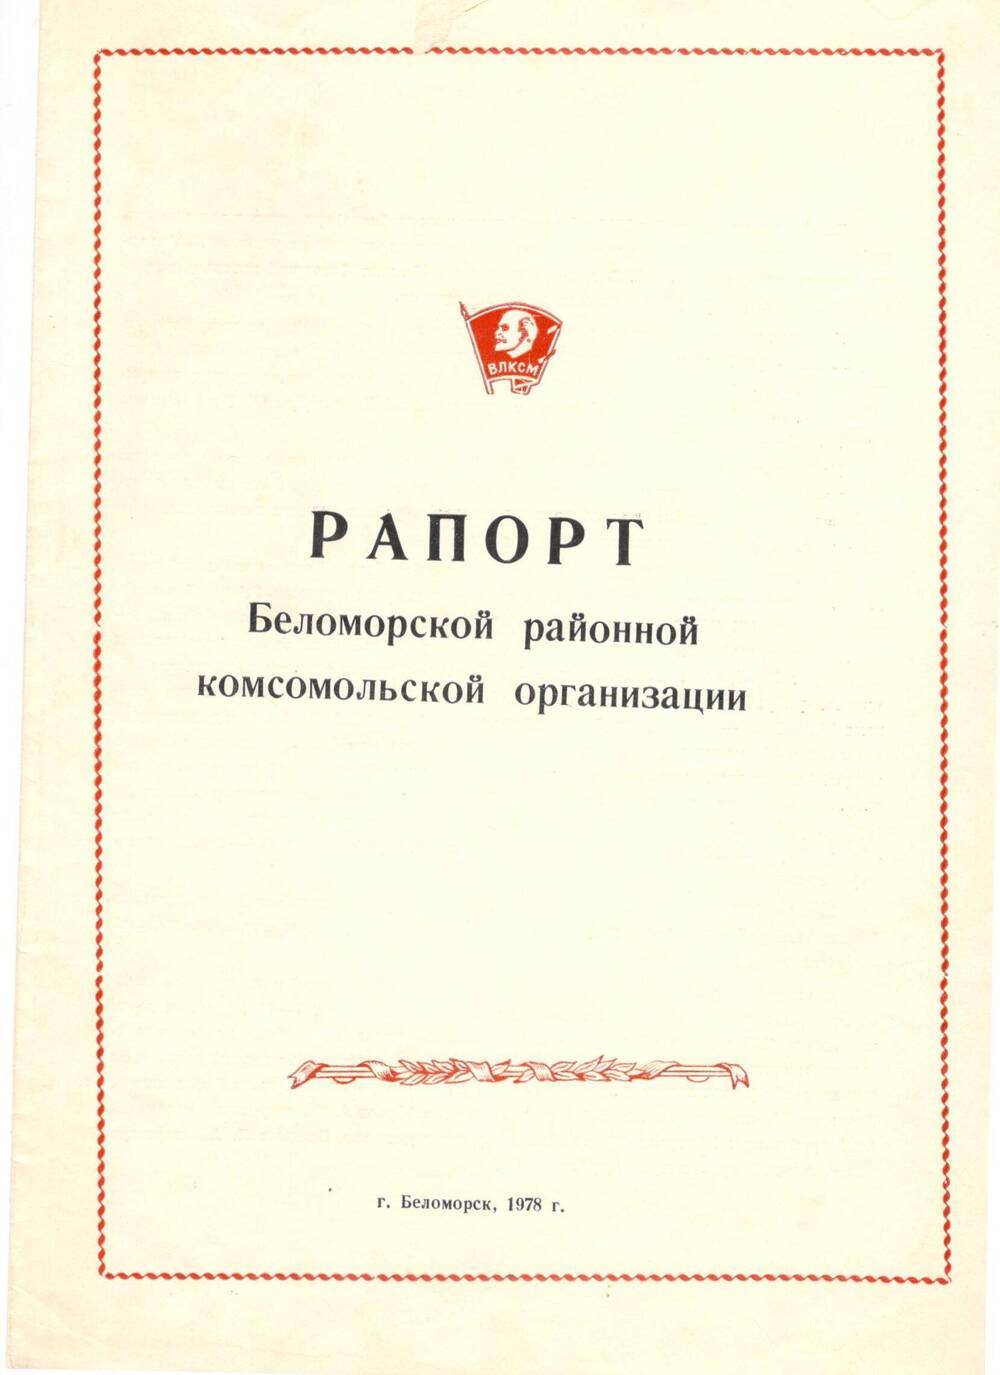 Рапорт Беломорской районной комсомольской организации, 1978 г.